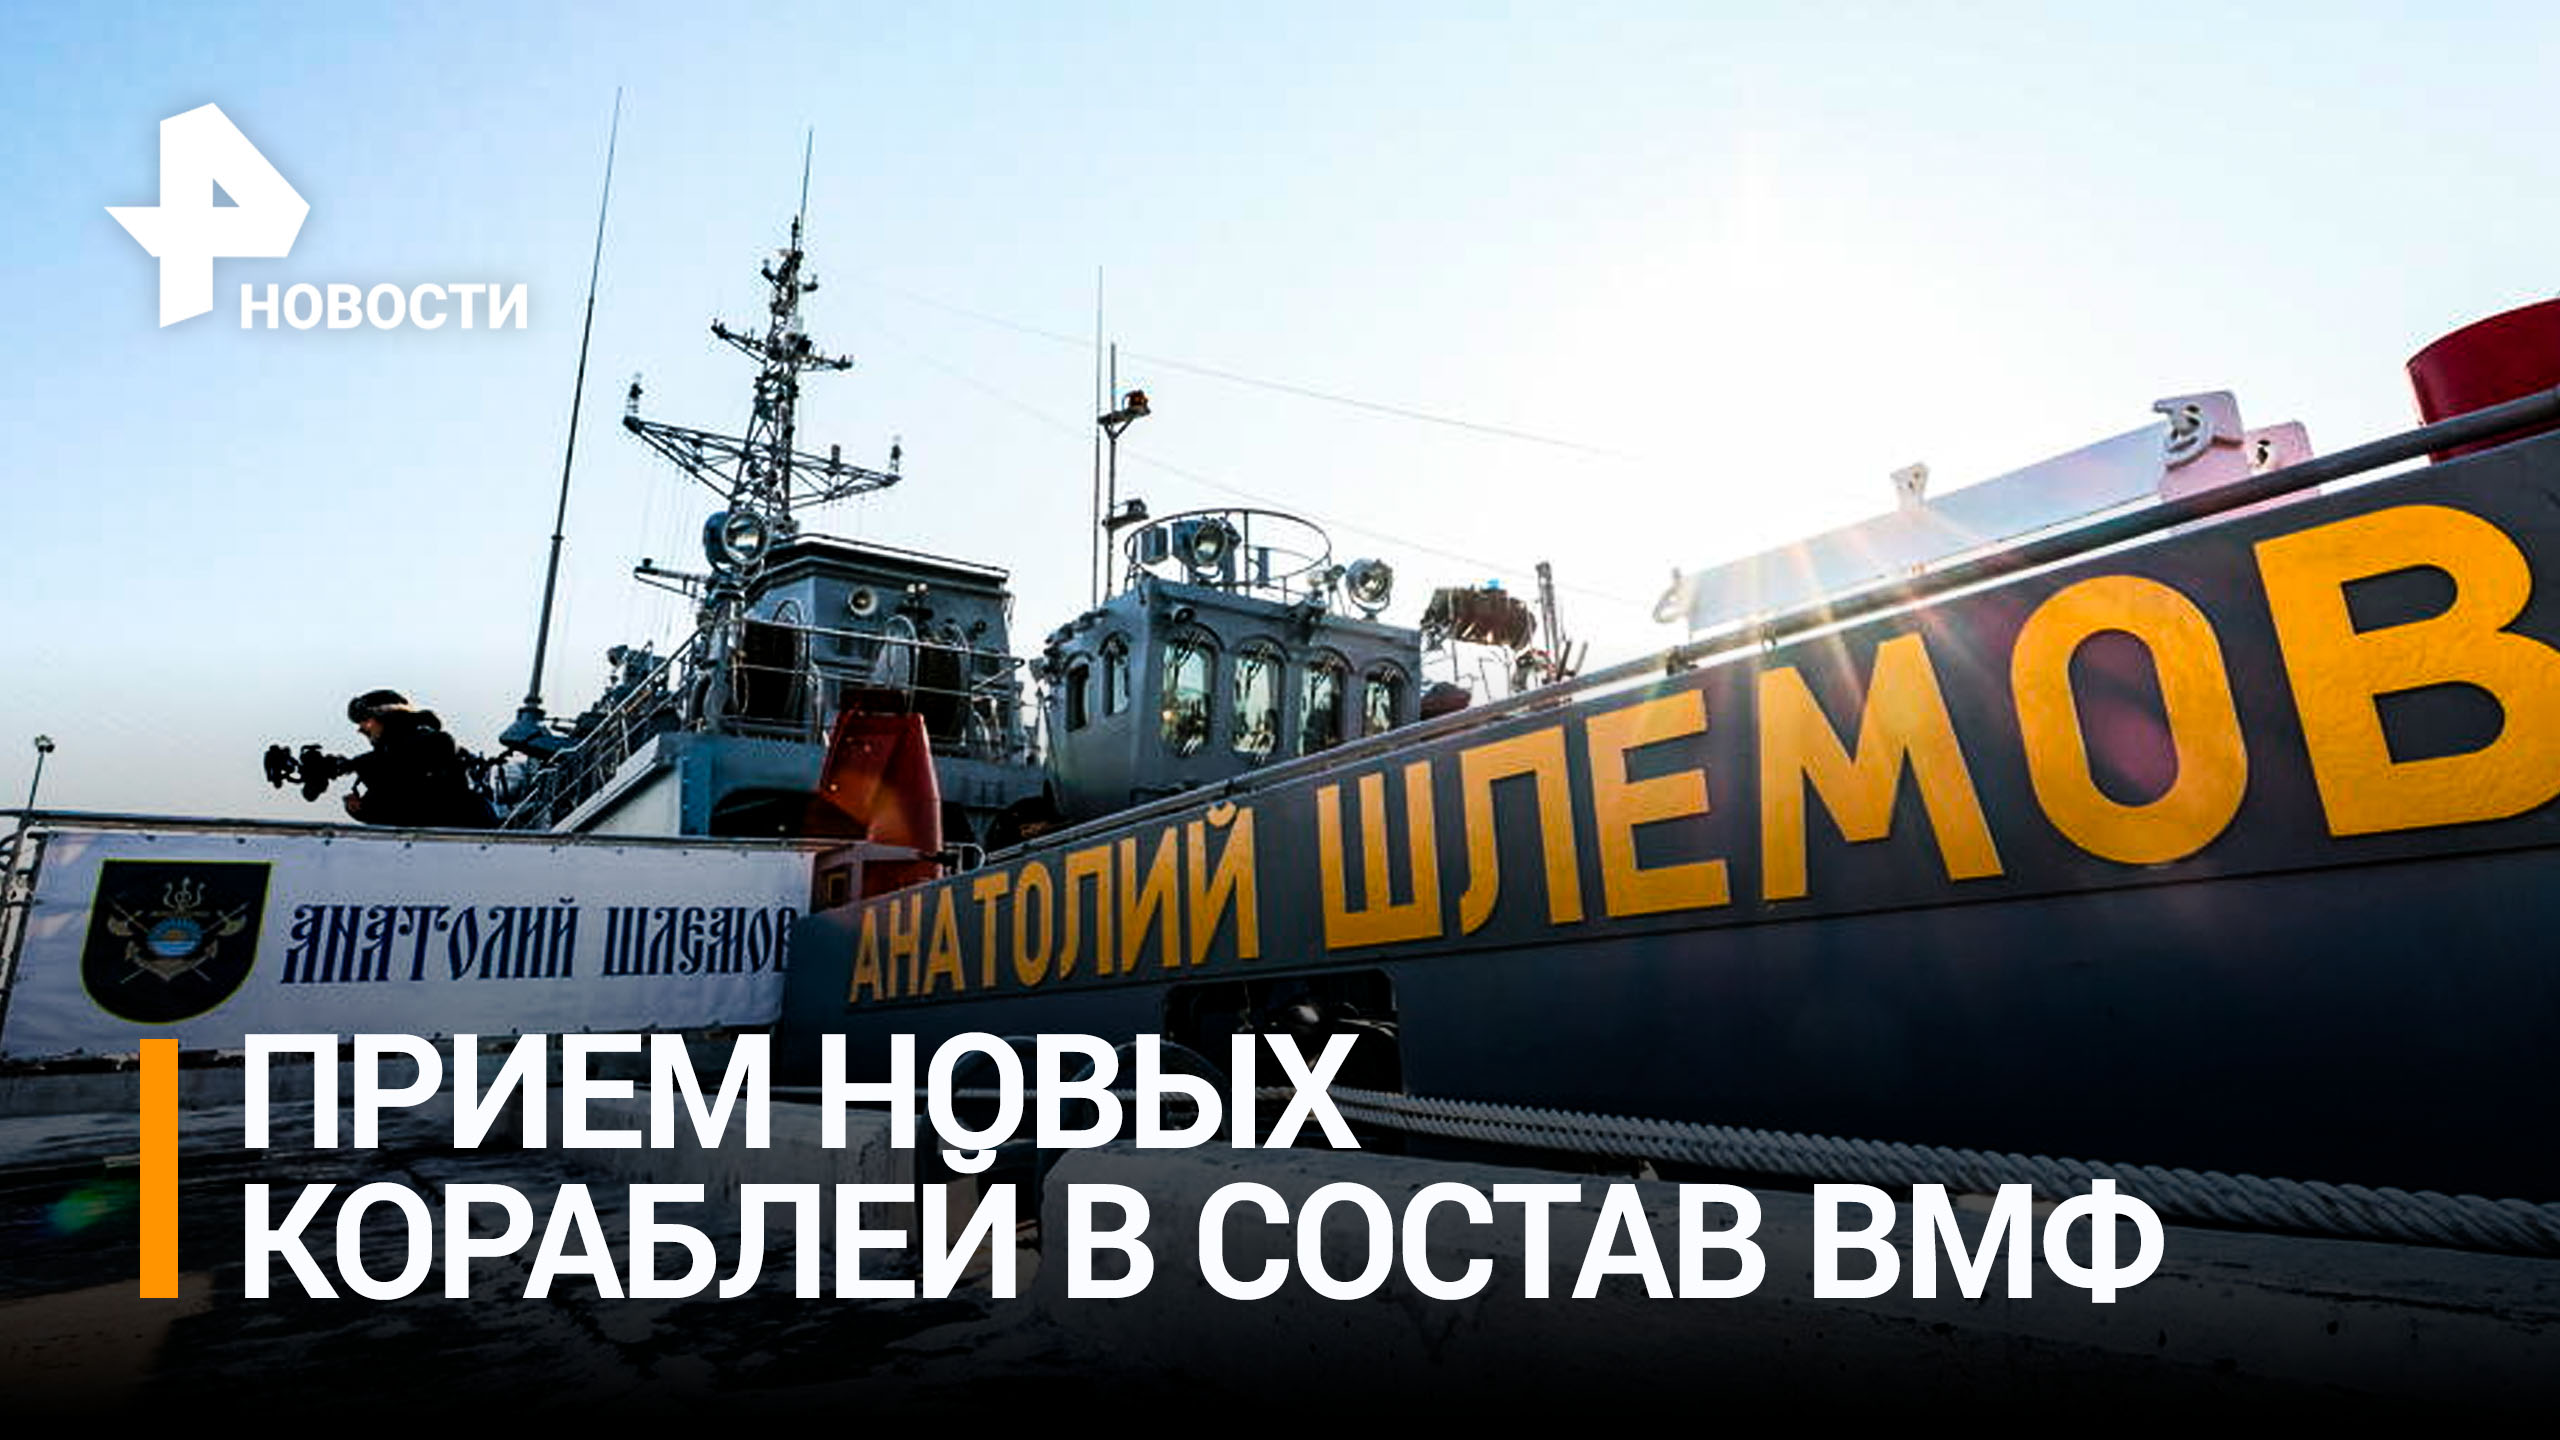 О чем говорил Путин на церемонии приема новых кораблей в состав ВМФ / РЕН Новости